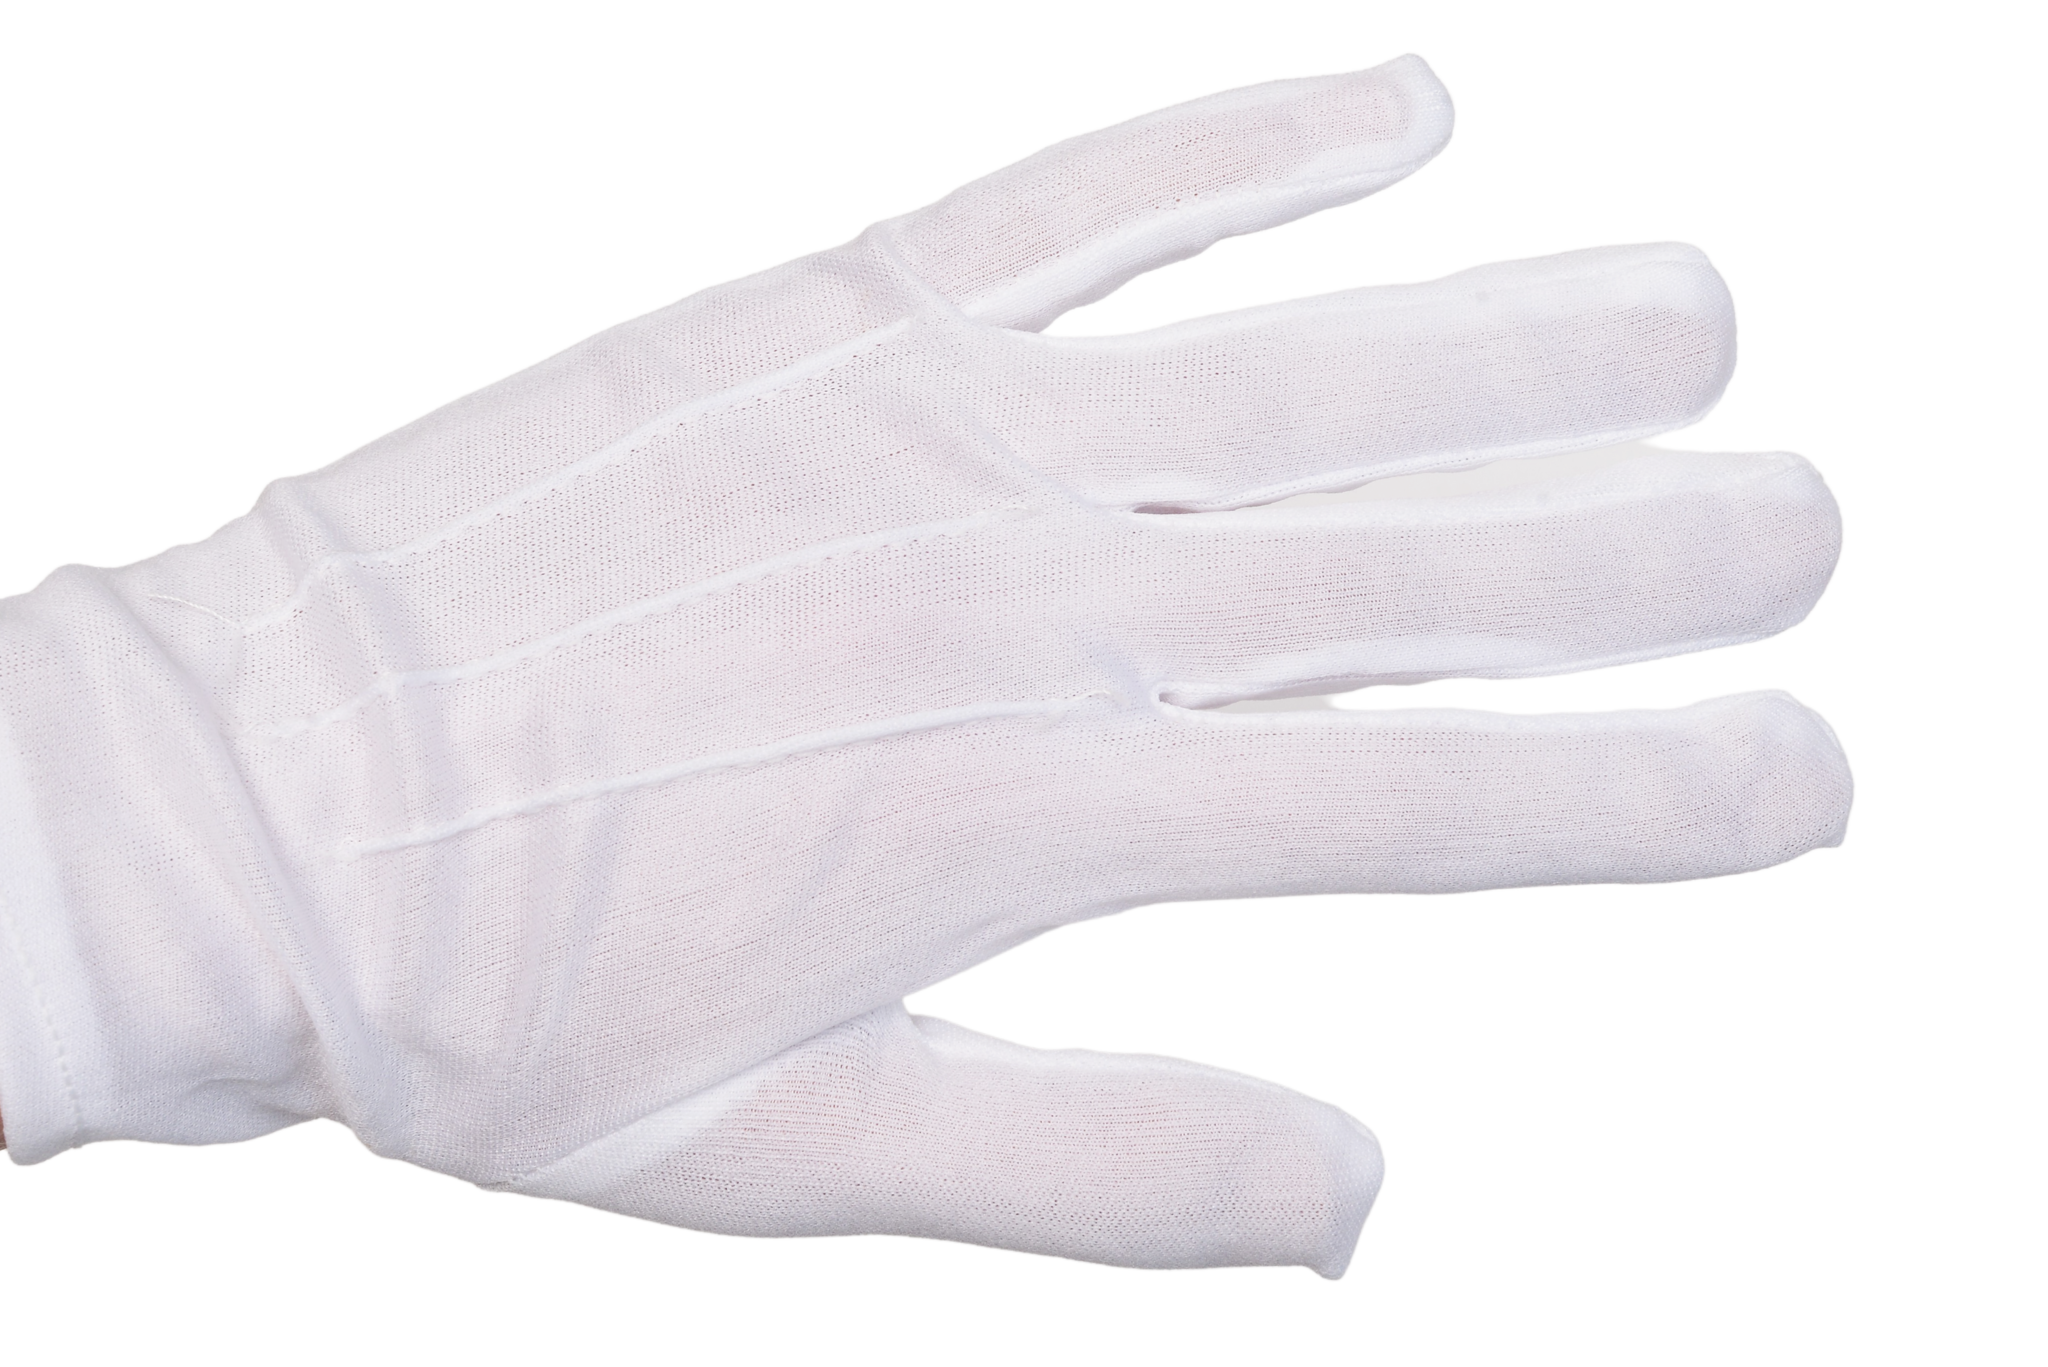 24 белых перчатки и 20 черных. Перчатки White p7 0899.401.107. ДС 2 перчатки белые. LGC Victori перчатки белые. Перчатки на белом фоне.